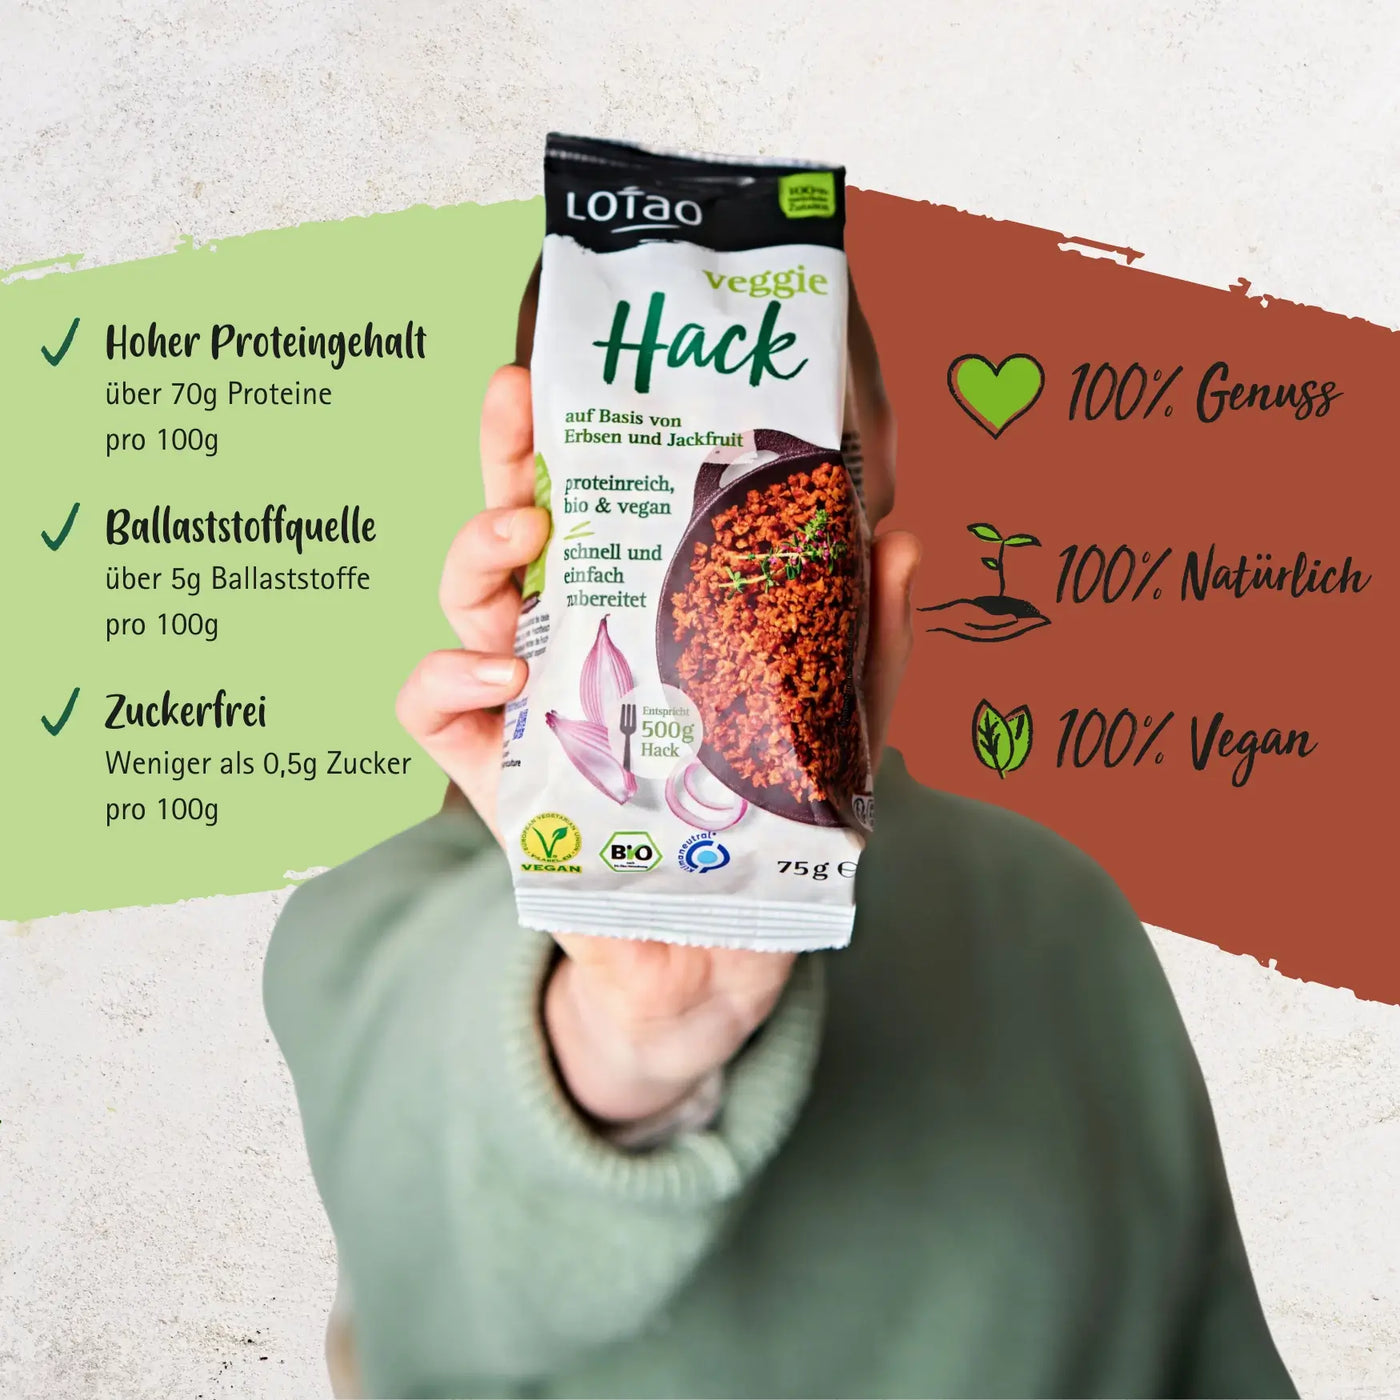 Das bio-vegane Veggie Hack von Lotao zeichnet sich durch einen hohen Proteingehalt aus, dass eine Ballaststoffquelle enthalten ist und das Produkt zuckerfrei ist für 100% veganen Genuss und Natürlichkeit